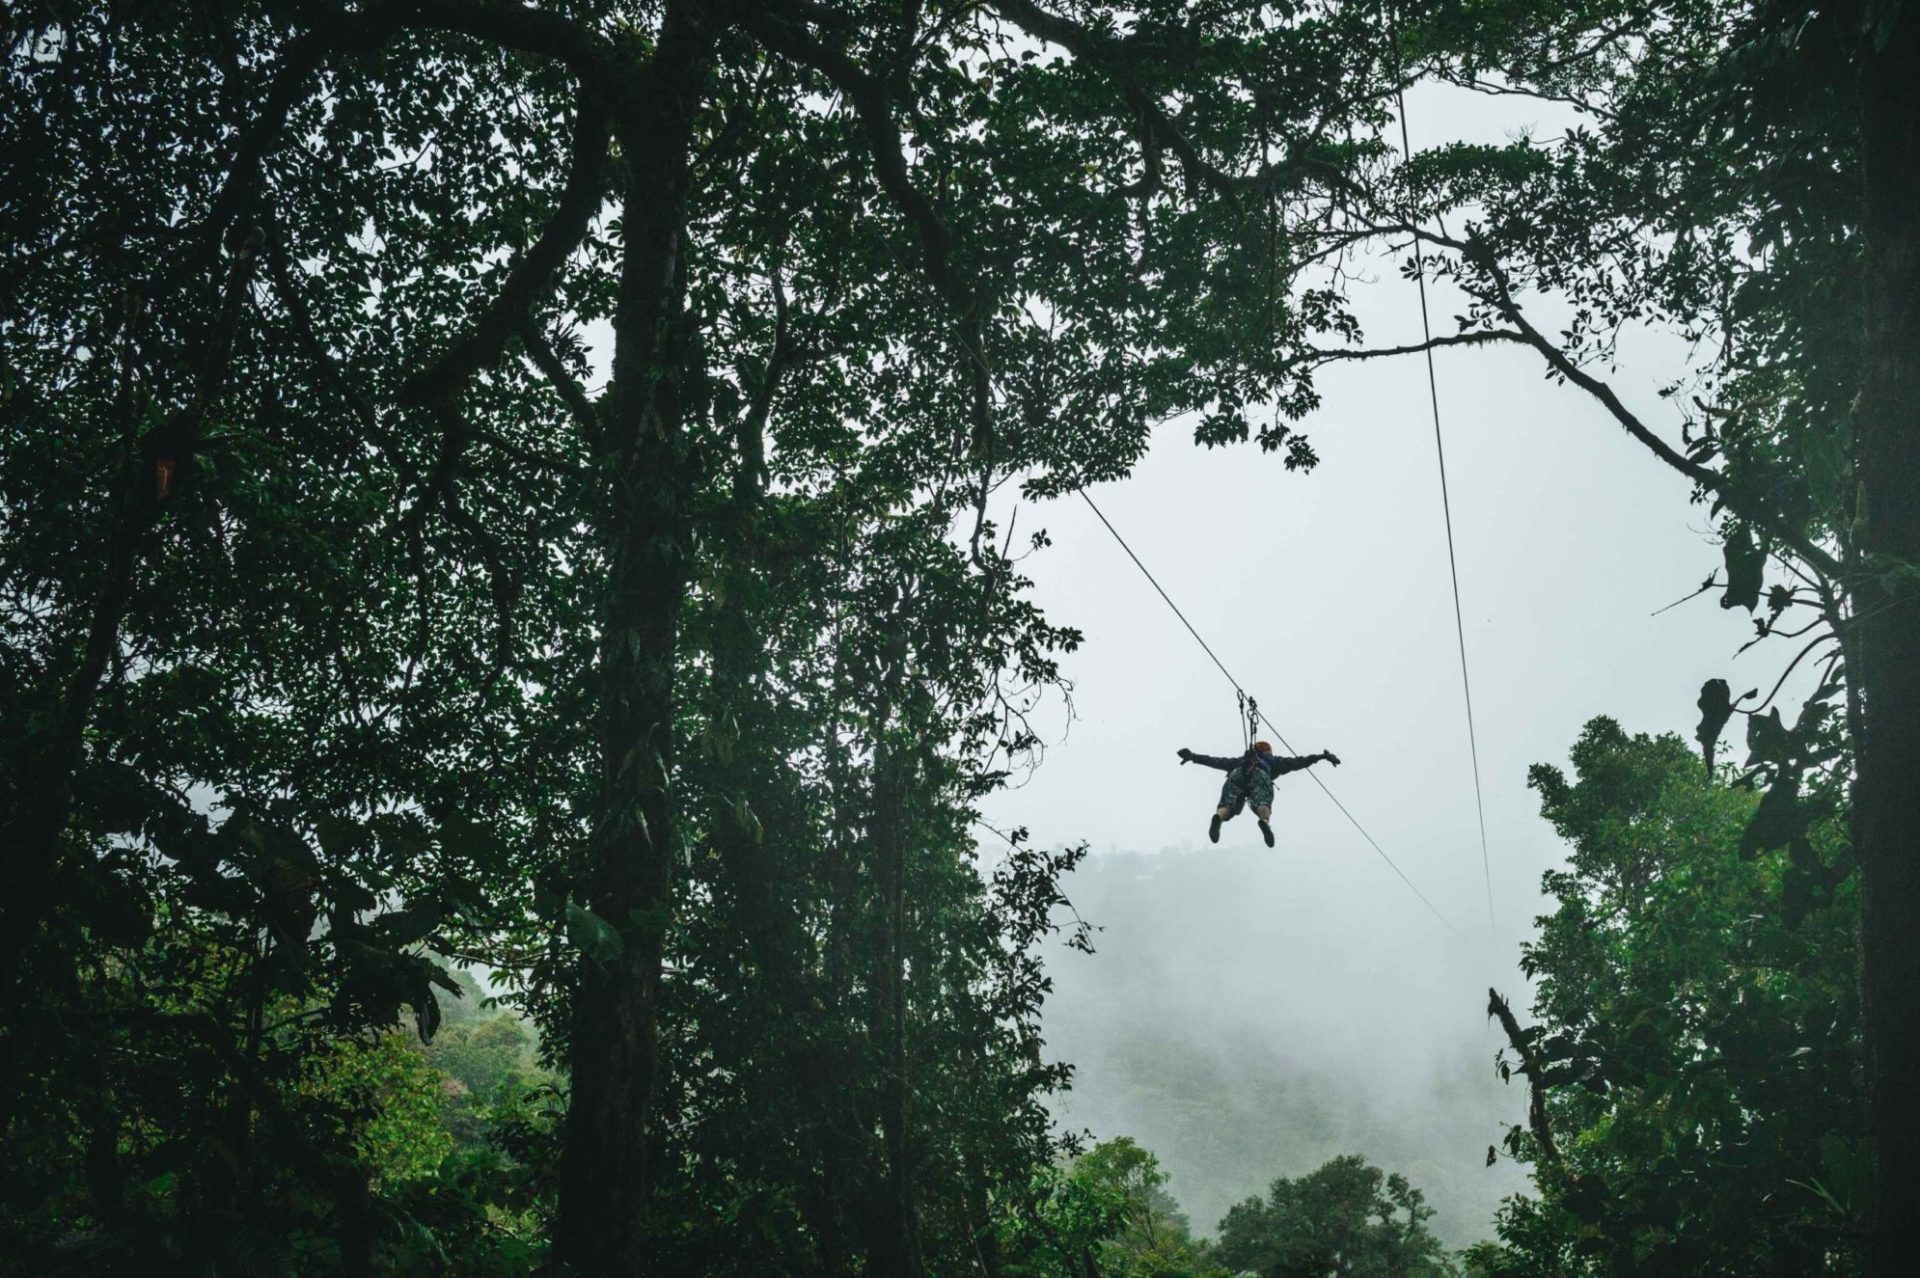 Monteverde, Costa Rica Ziplining